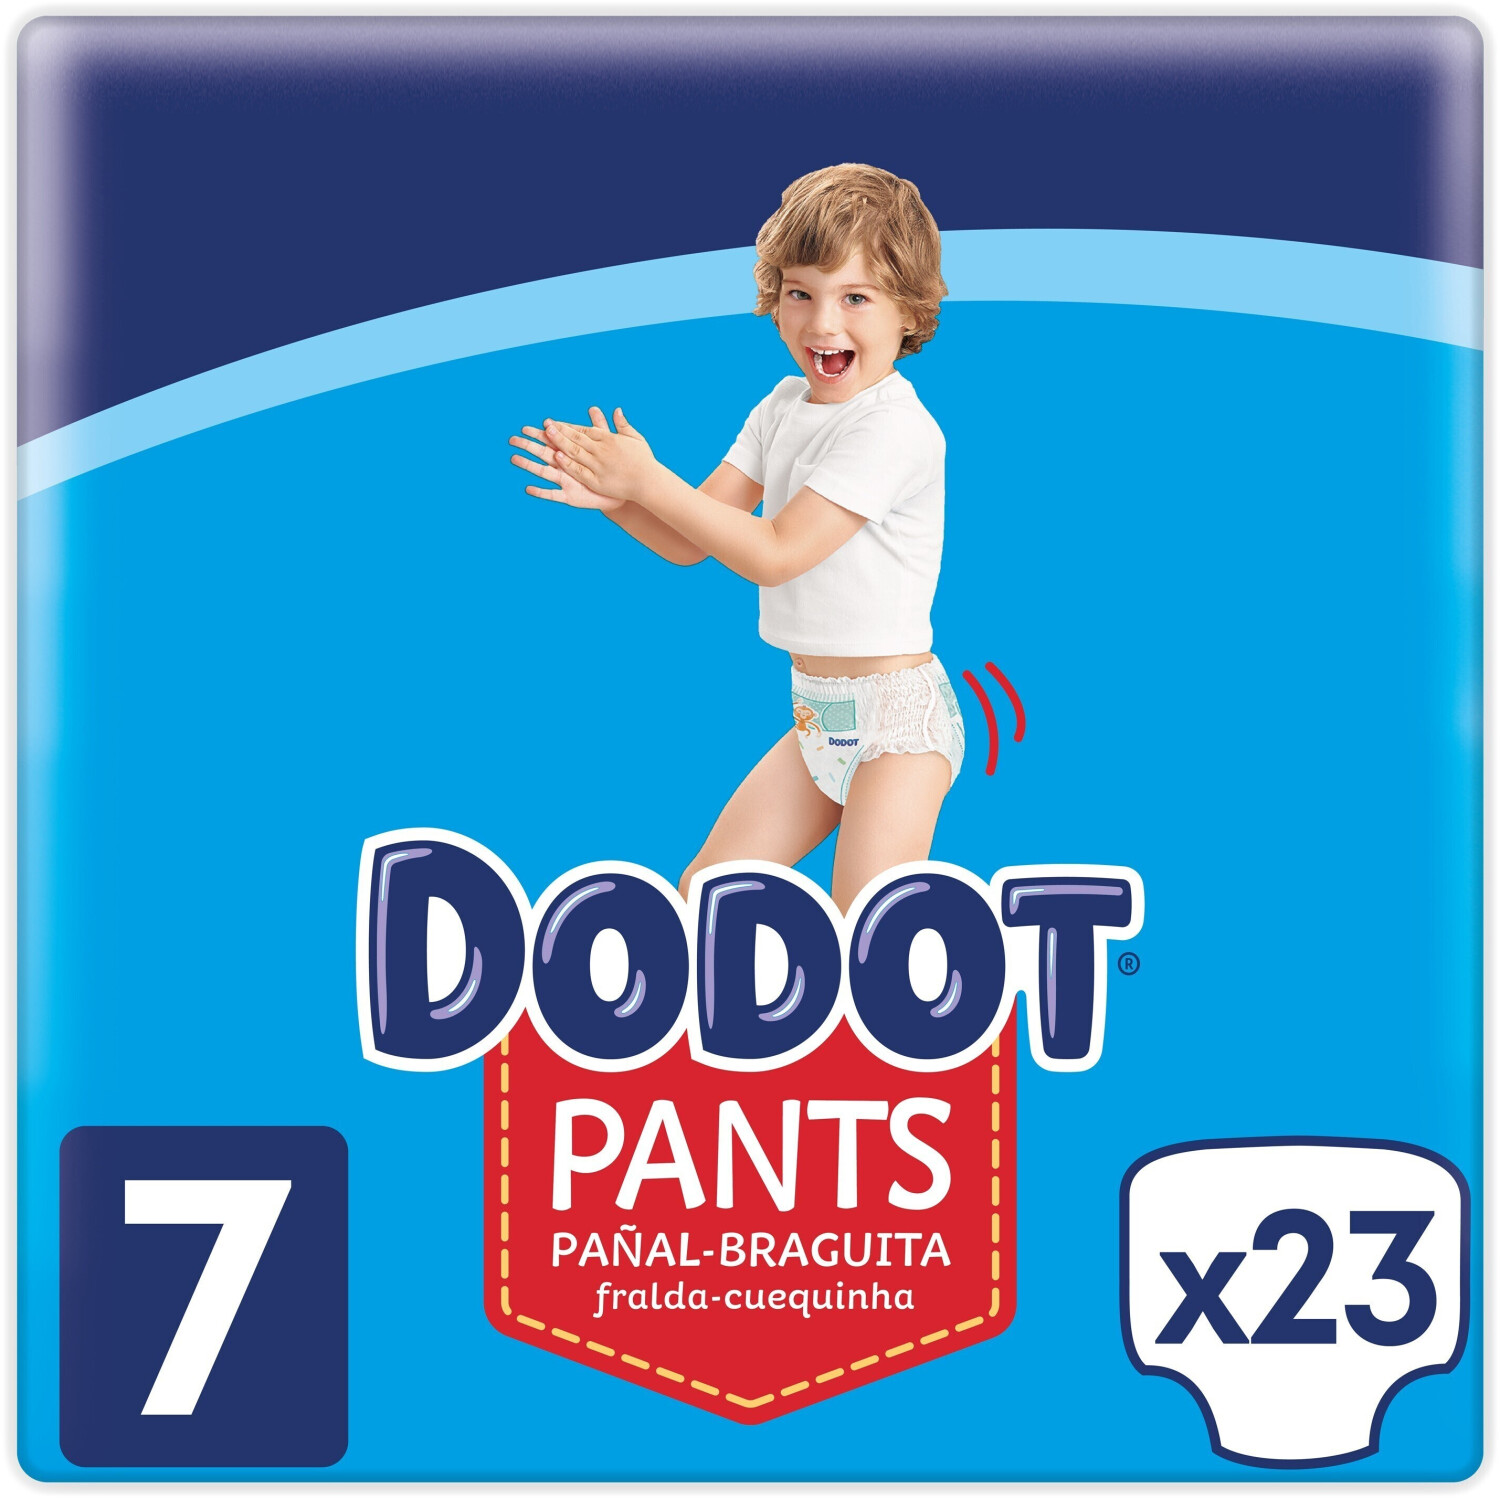 Dodot Pants pañal & braguita unisex de +17 kg talla 7 paquete 23 unidades